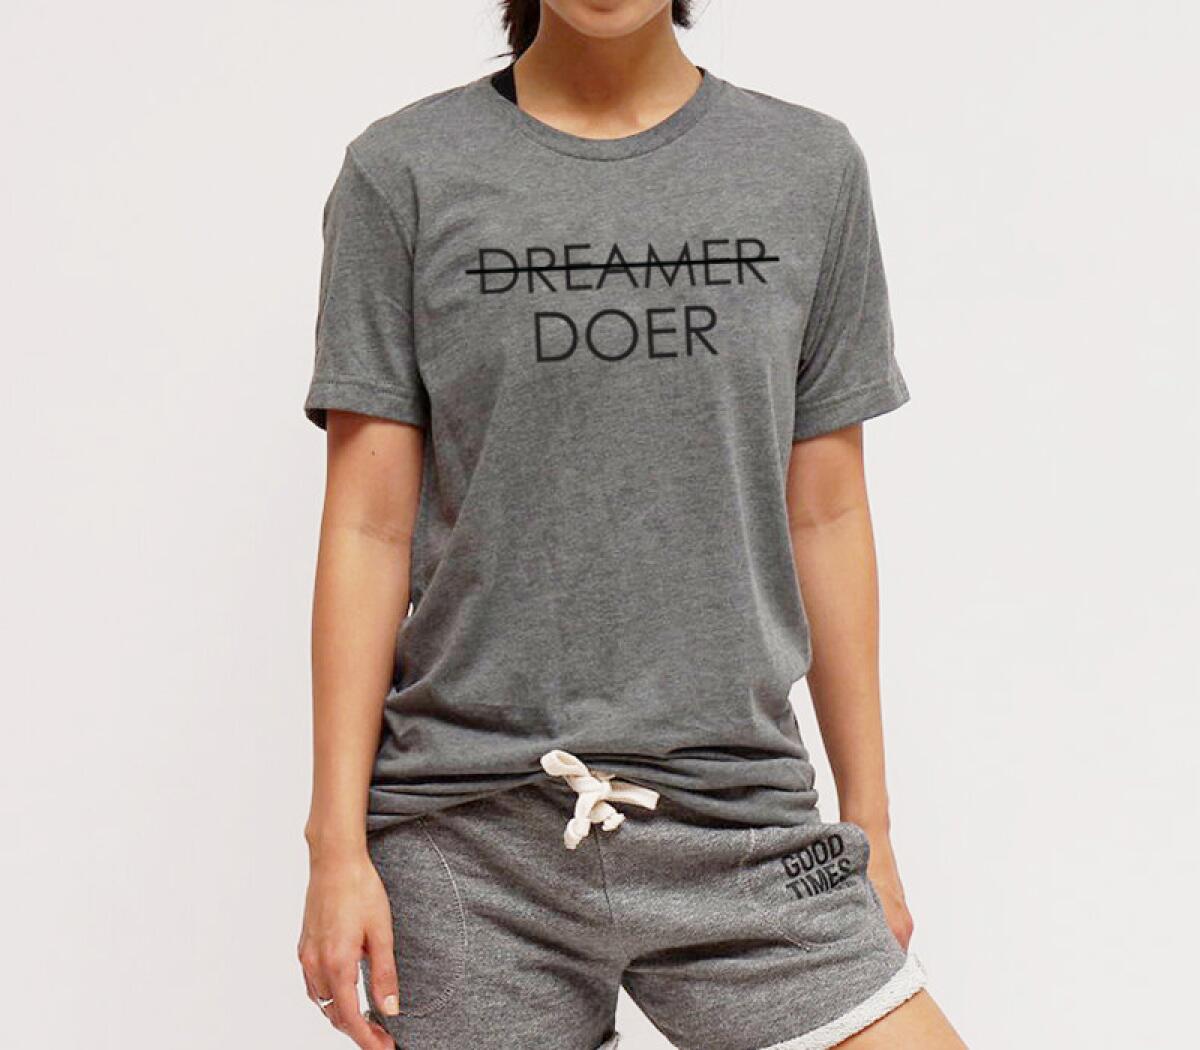 Insprational activewear: For Better Not Worse (DREAMER DOER T-Shirt, $44)